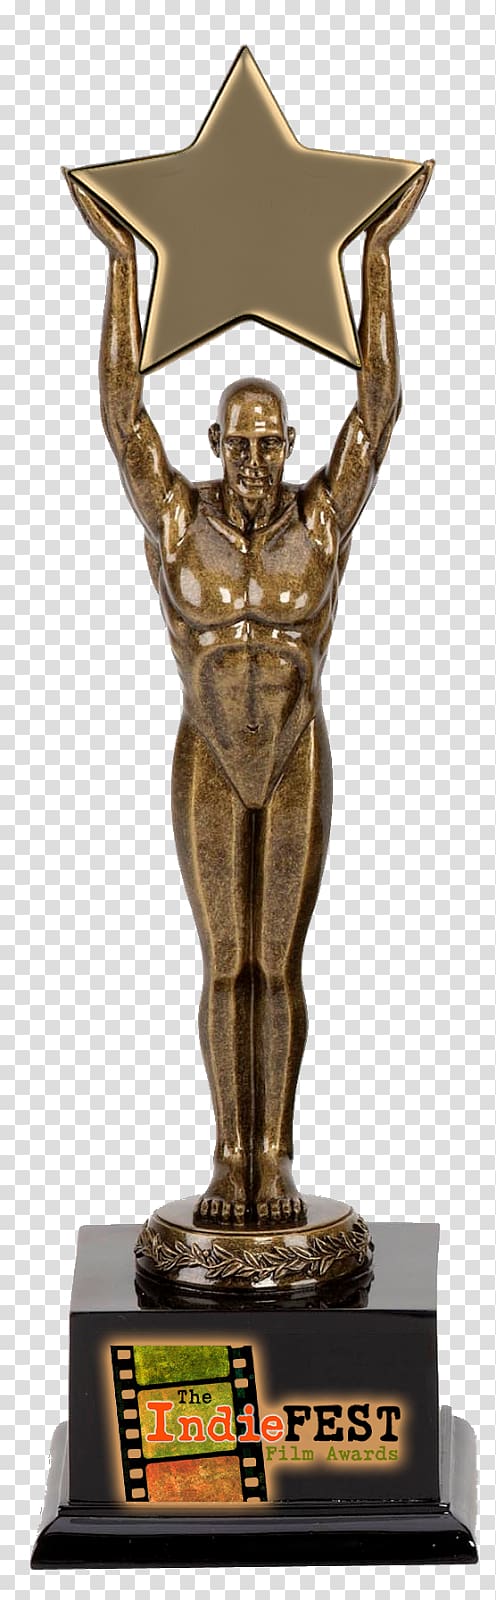 San Francisco Independent Film Festival Award Trophy Figurine, award transparent background PNG clipart